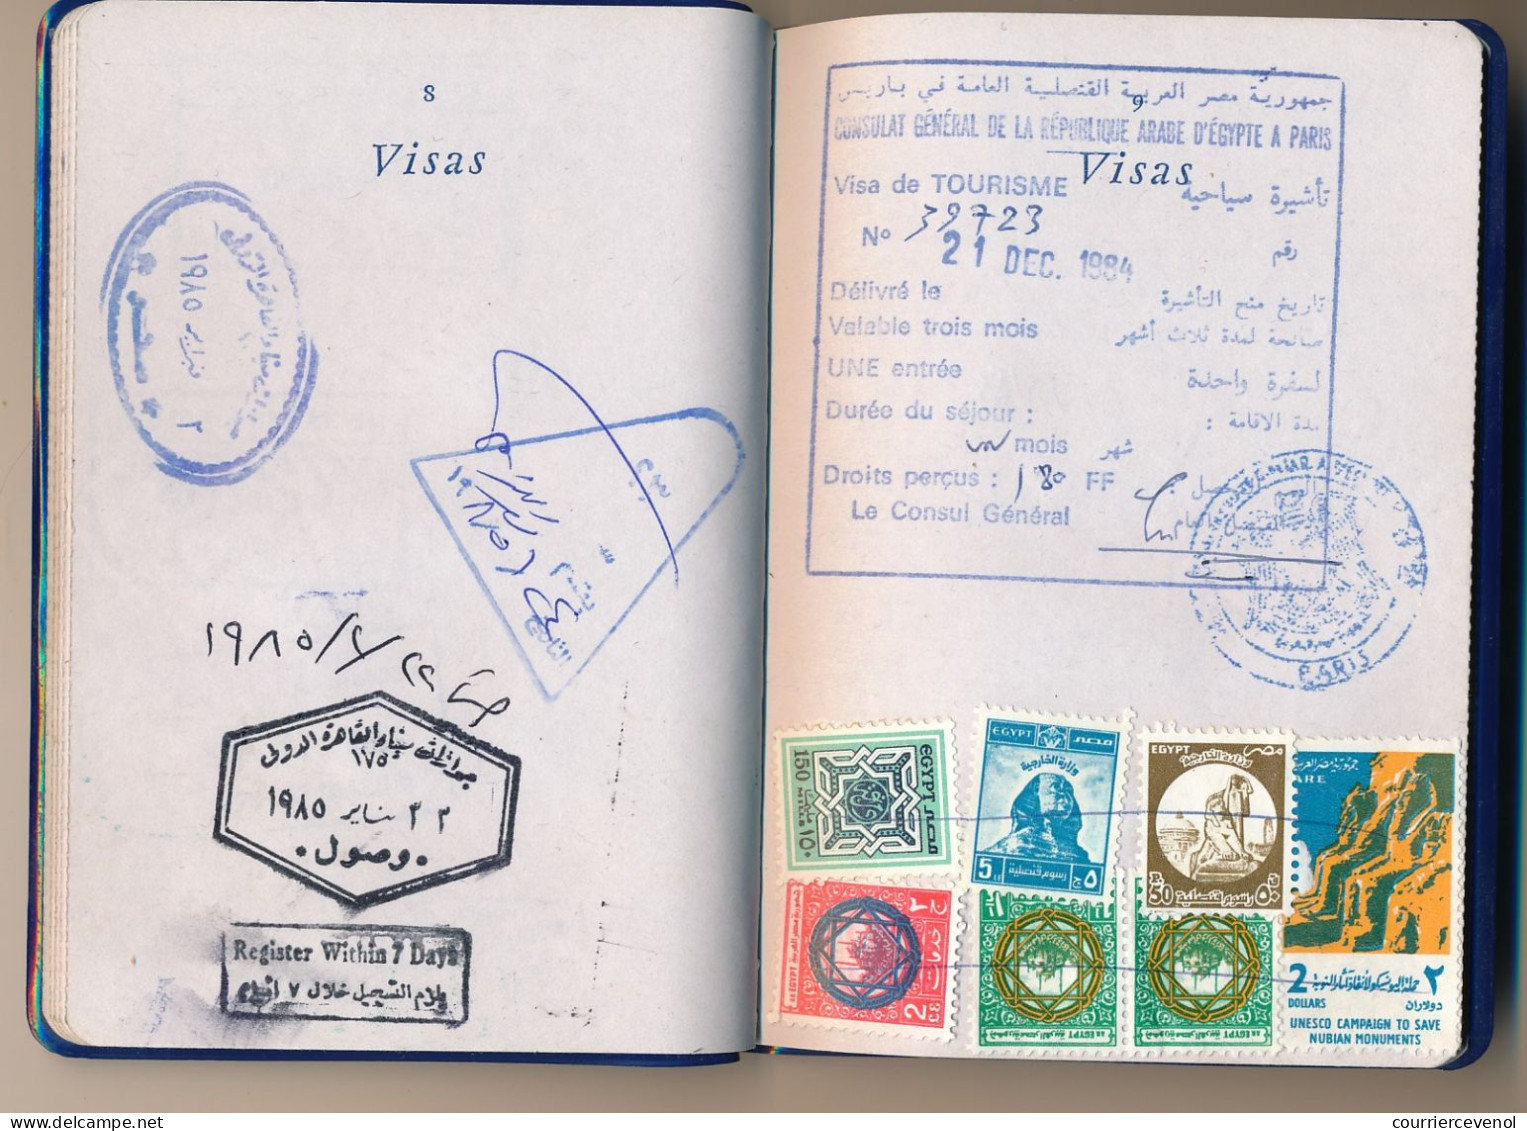 FRANCE / EGYPTE - Passeport émis à Paris 1981 (Fiscal 200,00F) + fiscaux Egyptiens / Ambassade Egypte à Paris 1984